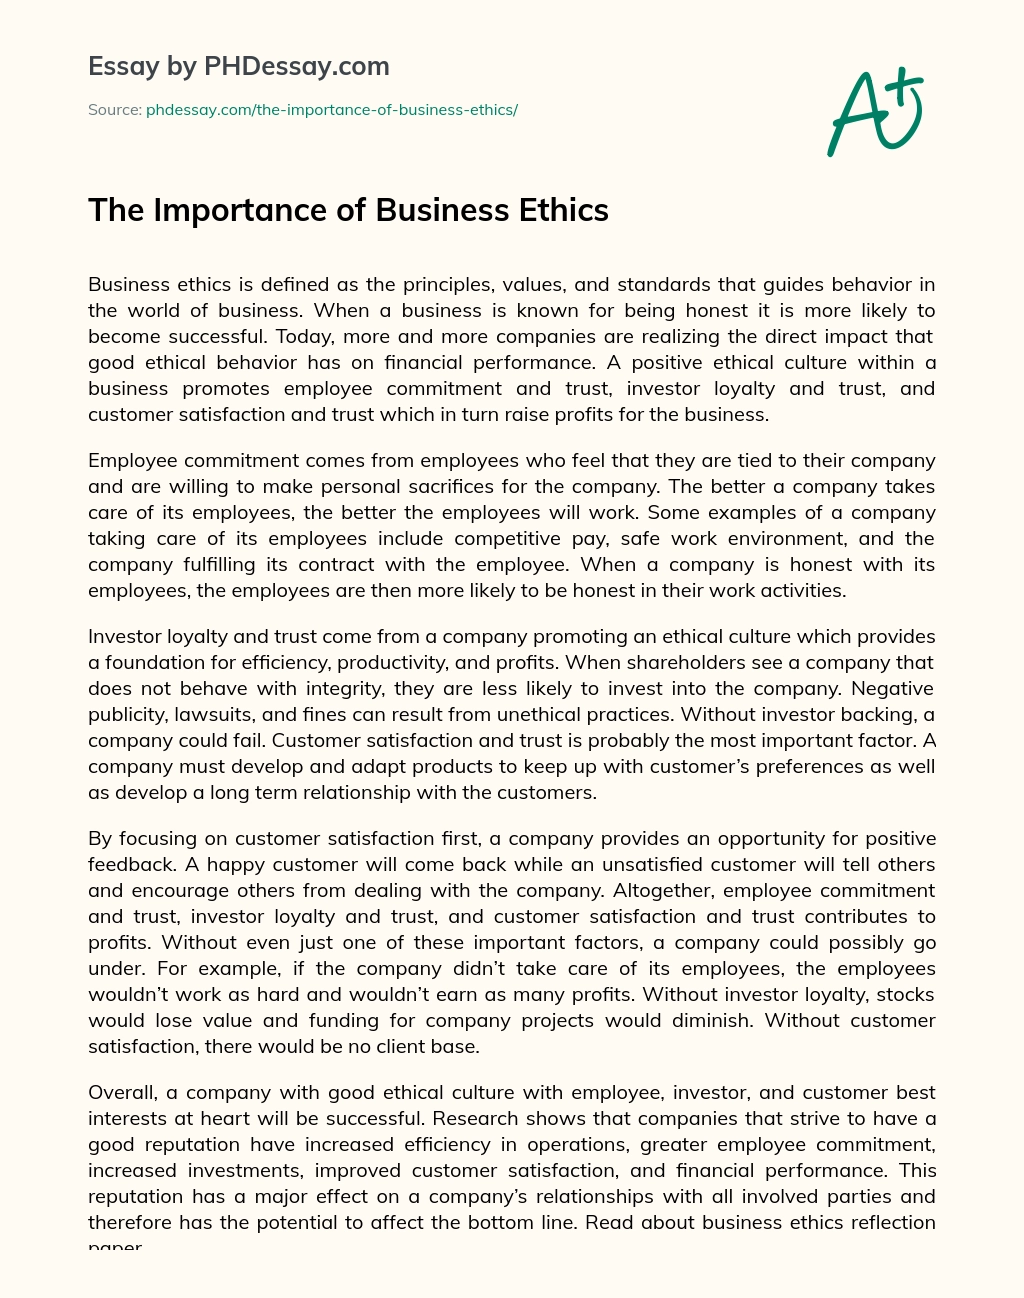 business ethics essay conclusion